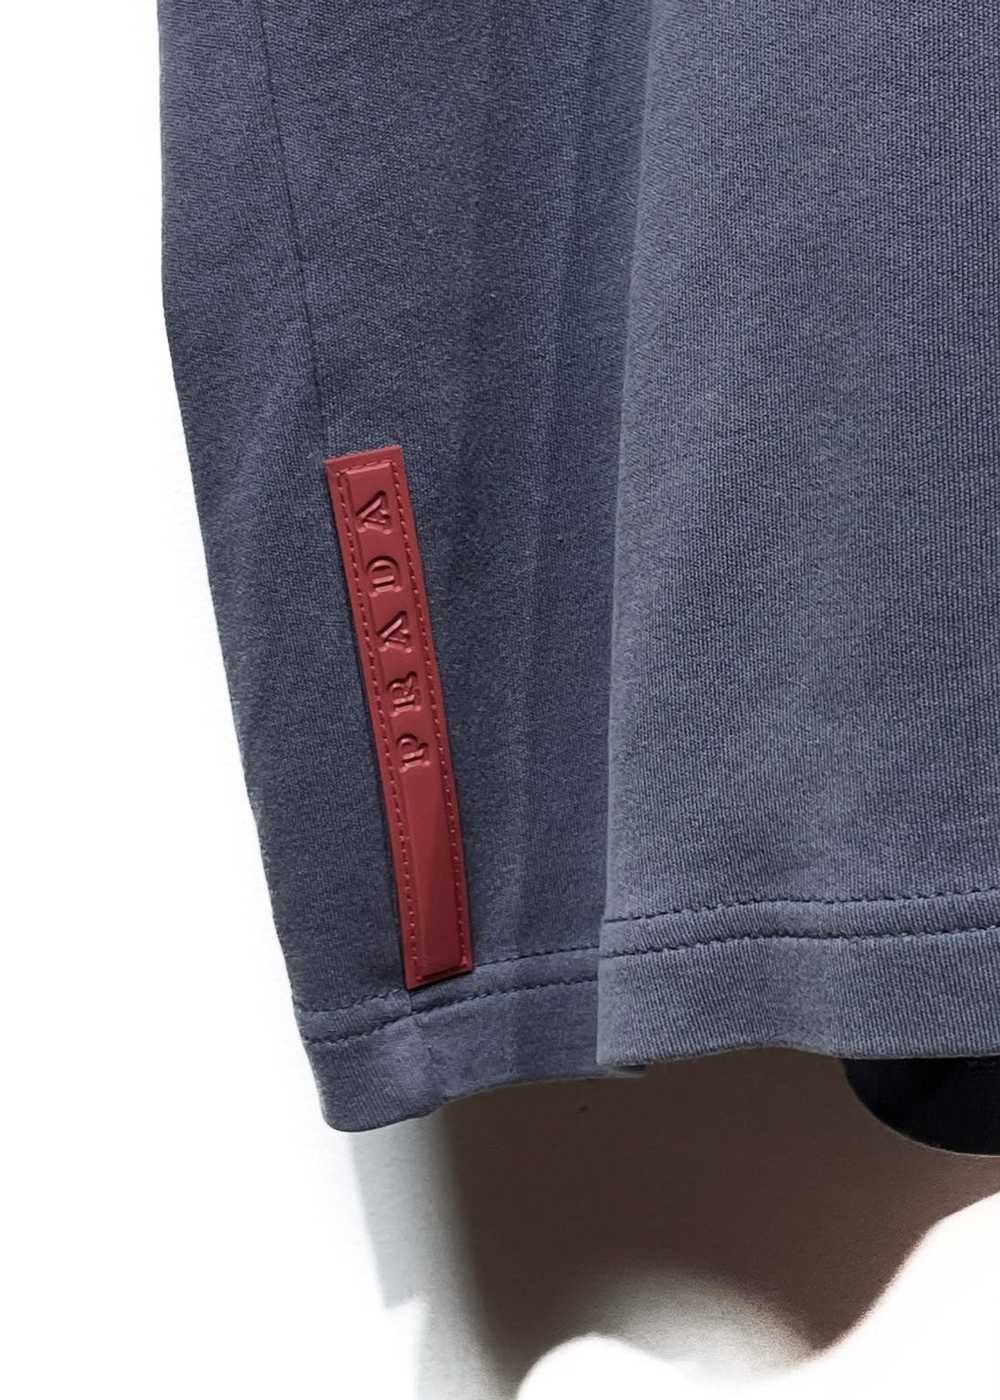 Prada Prada Linea Rossa Steel Grey Polo Shirt - image 3